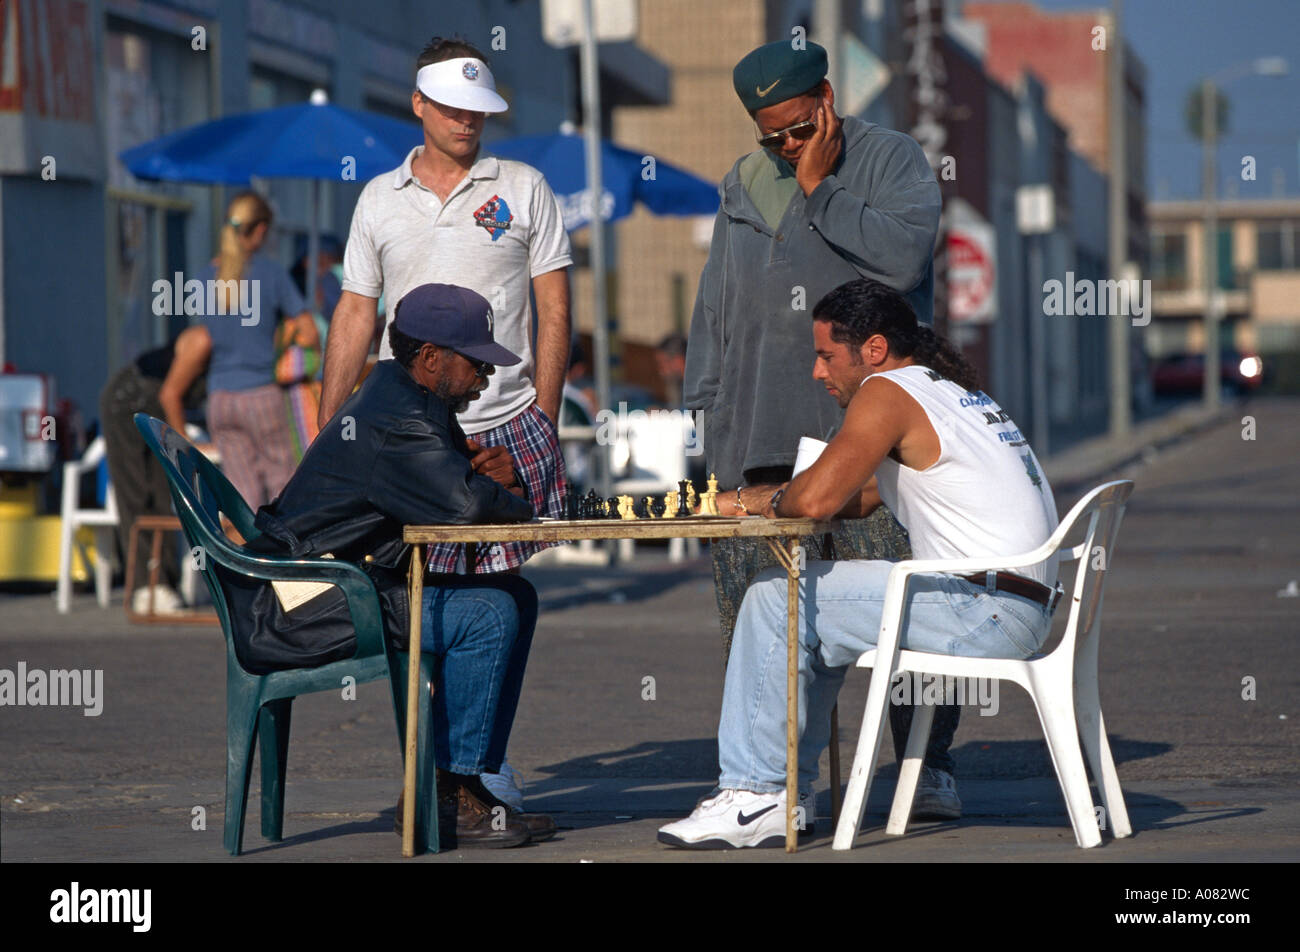 Zwei Schachspieler setzen ihren Tisch auf der Straße lokale Beschriftung  Zwei Schachspieler Auf der Straße Stockfotografie - Alamy